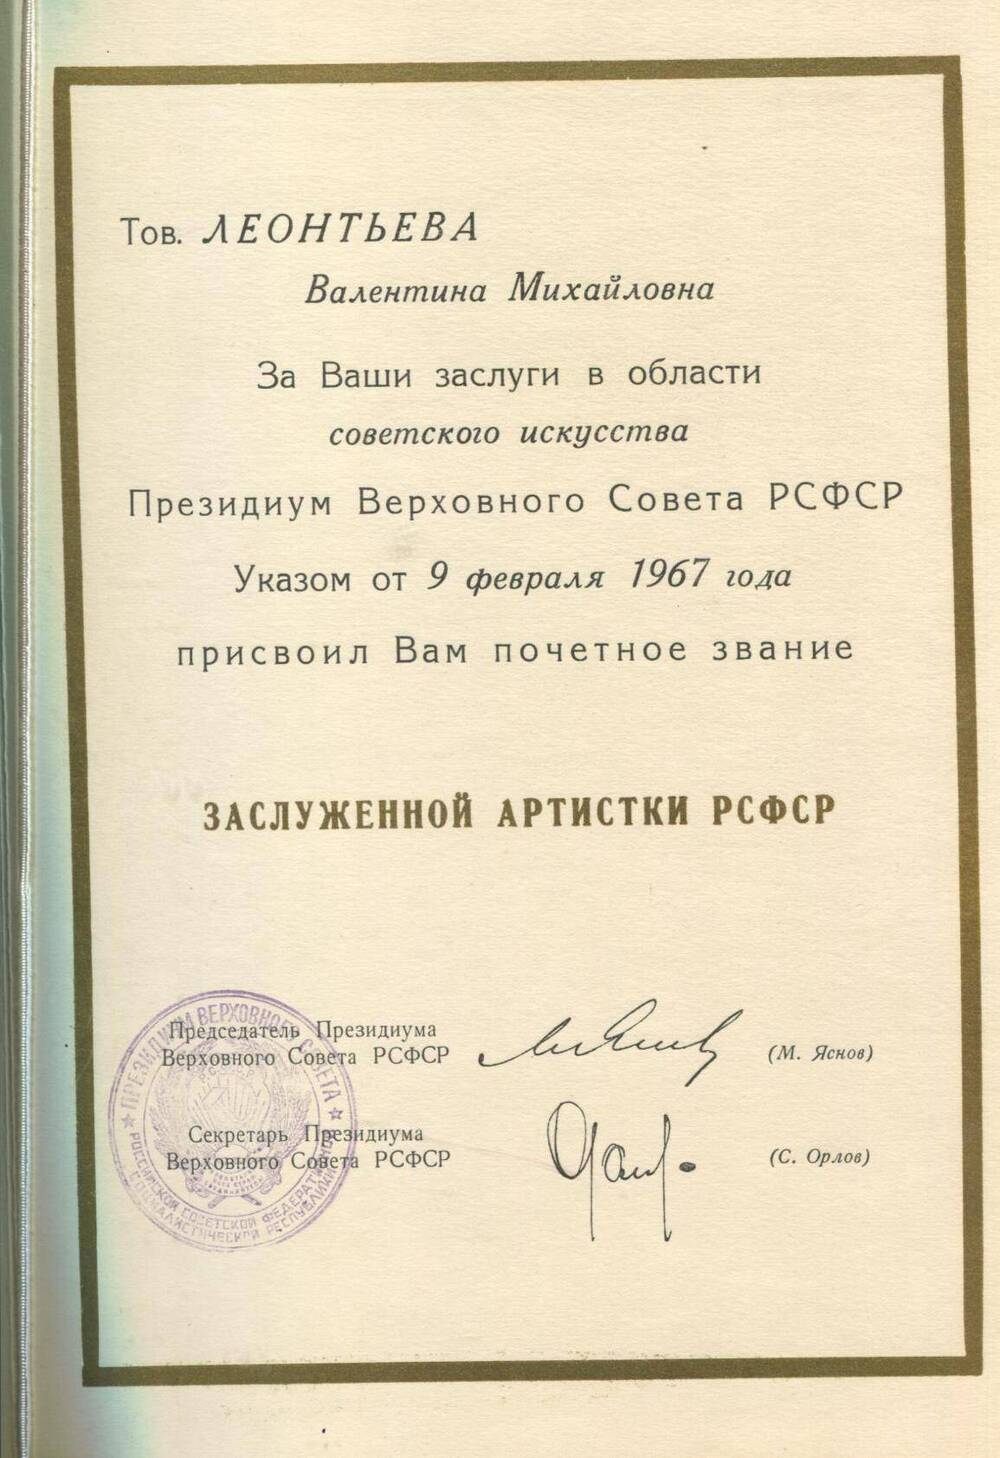 Грамота В.М.Леонтьевой о присвоении звания Заслуженной артистки РСФСР. Указом от 9 февраля 1967 г.